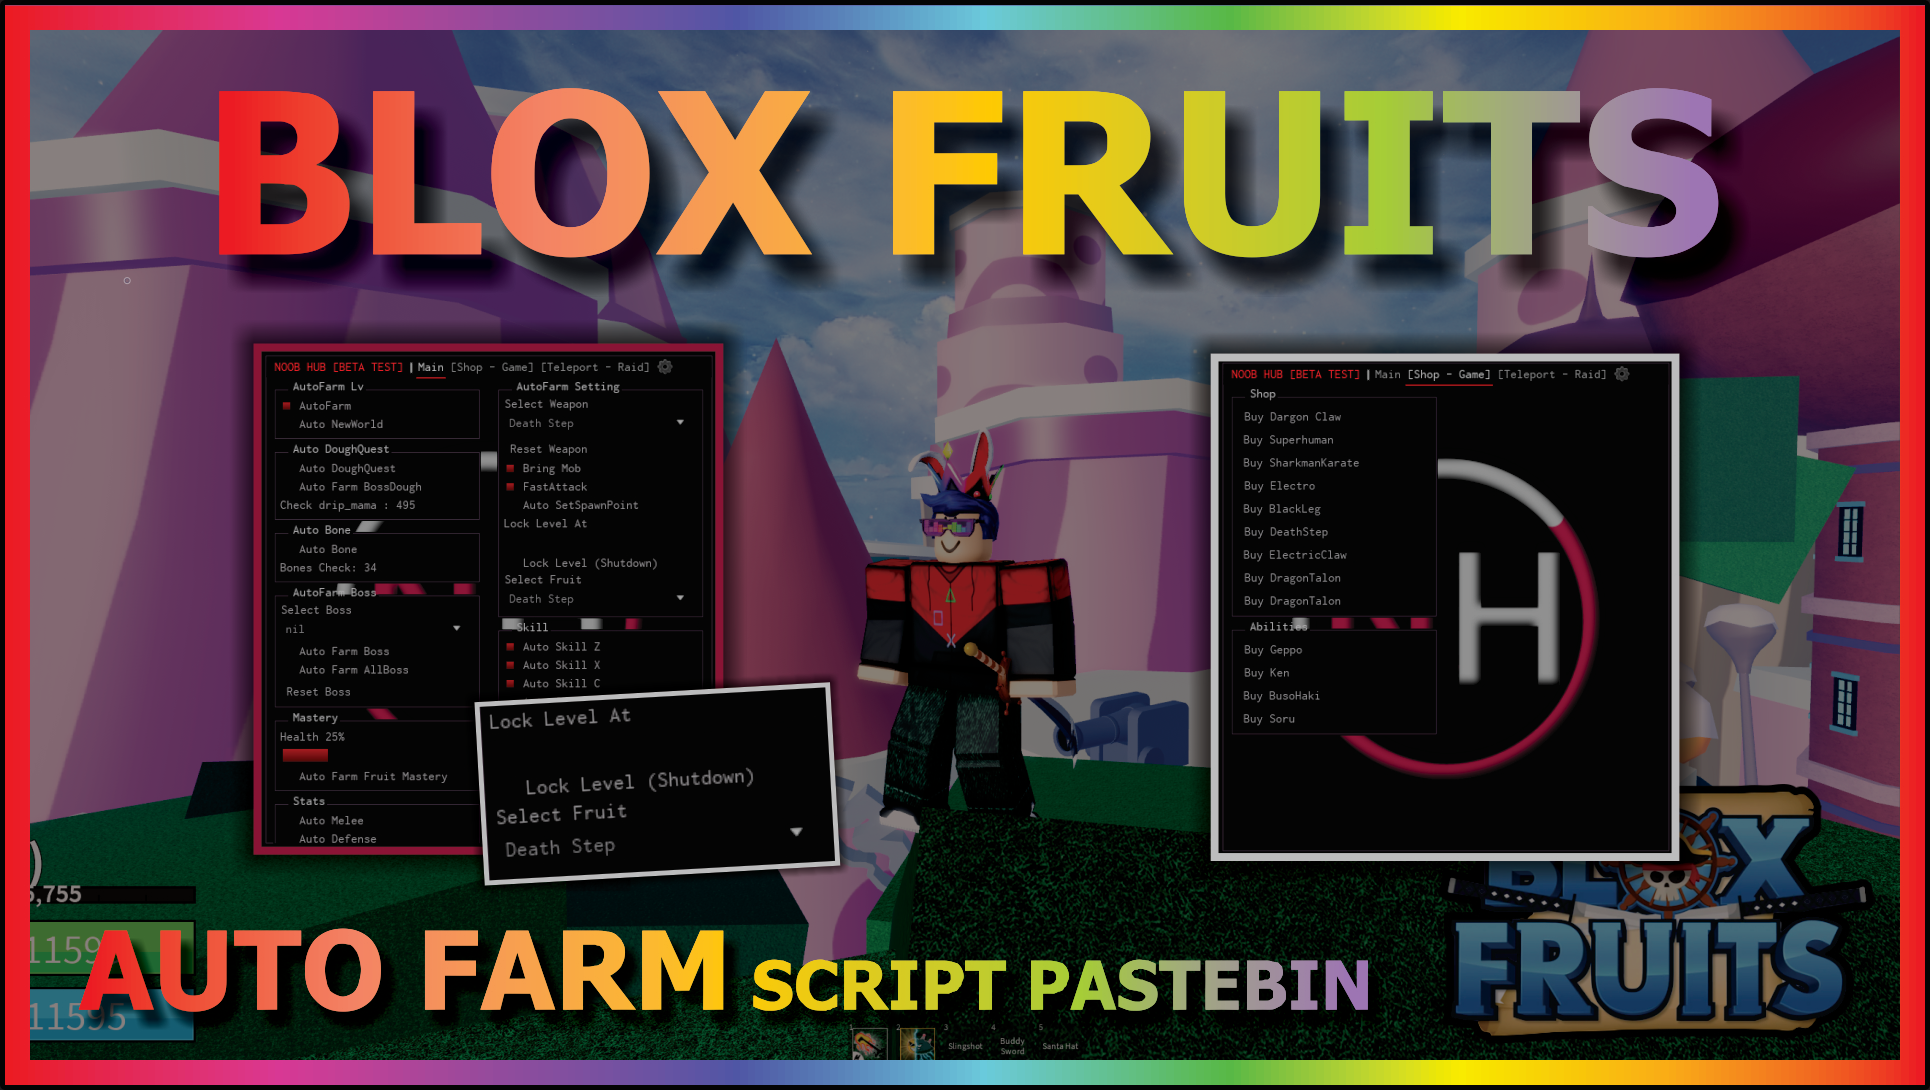 Blox Fruits script - (Check profile) #robloxscripts #robloxscript #blo